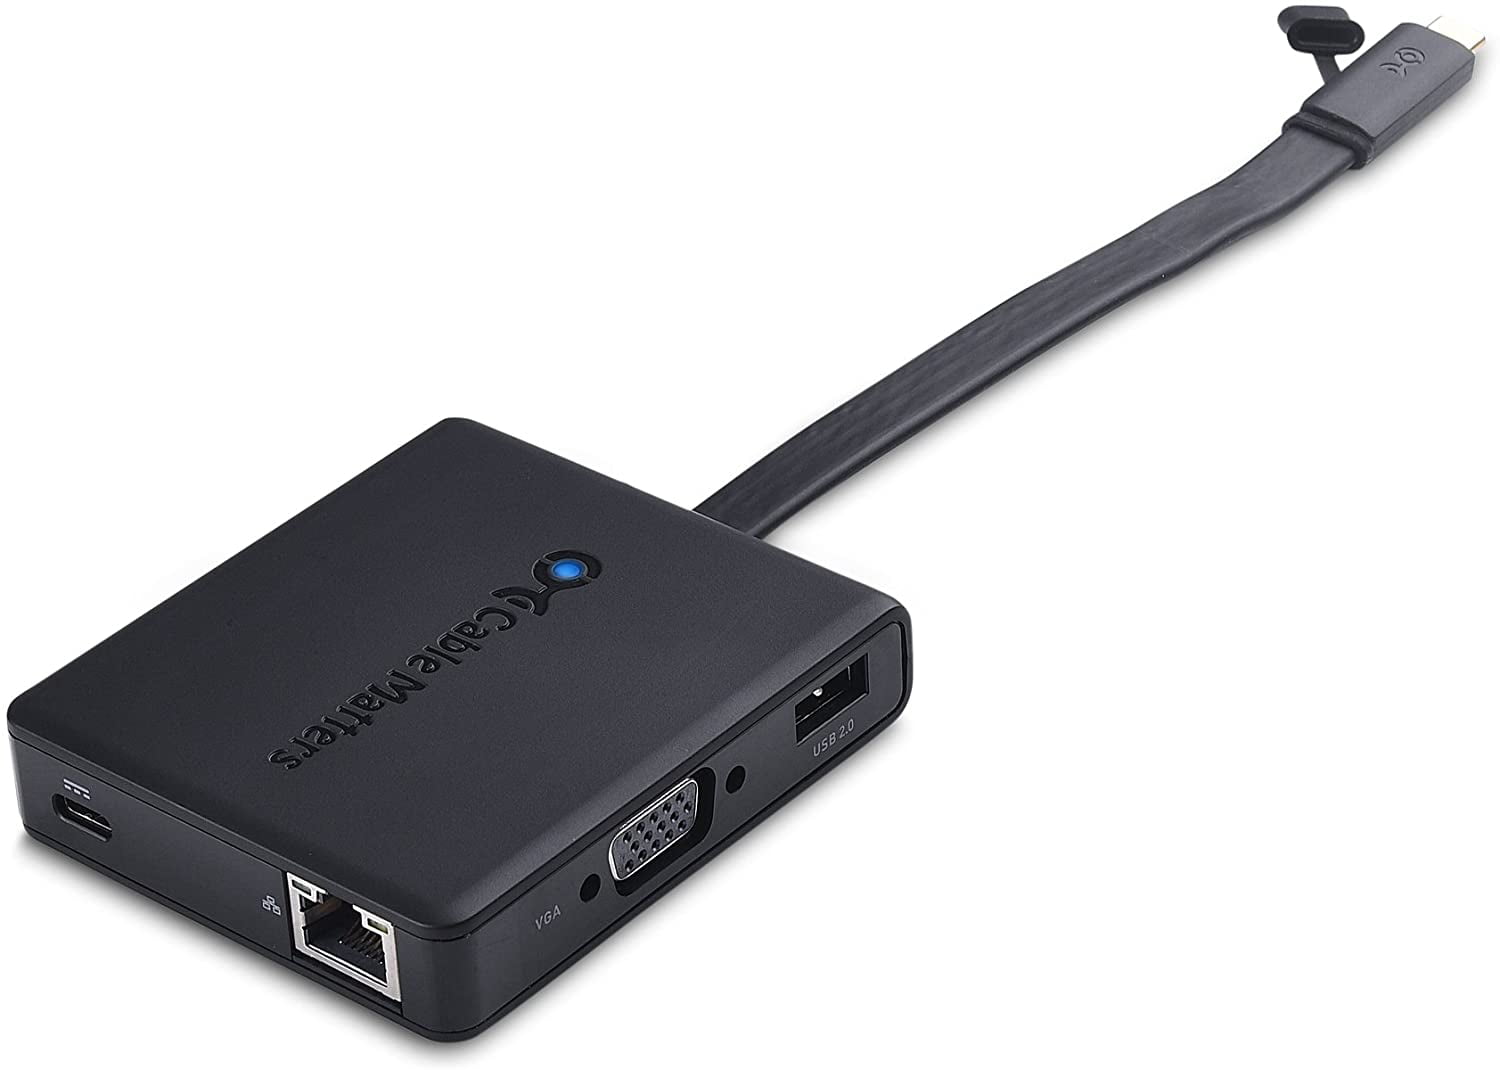 Cable Matters Cable HDMI USB C (Cable USB C HDMI) Prise en Charge de 4K  60Hz en Noir 1,8m - Thunderbolt 3 Compatible pour MacBook Pro, Dell XPS 13